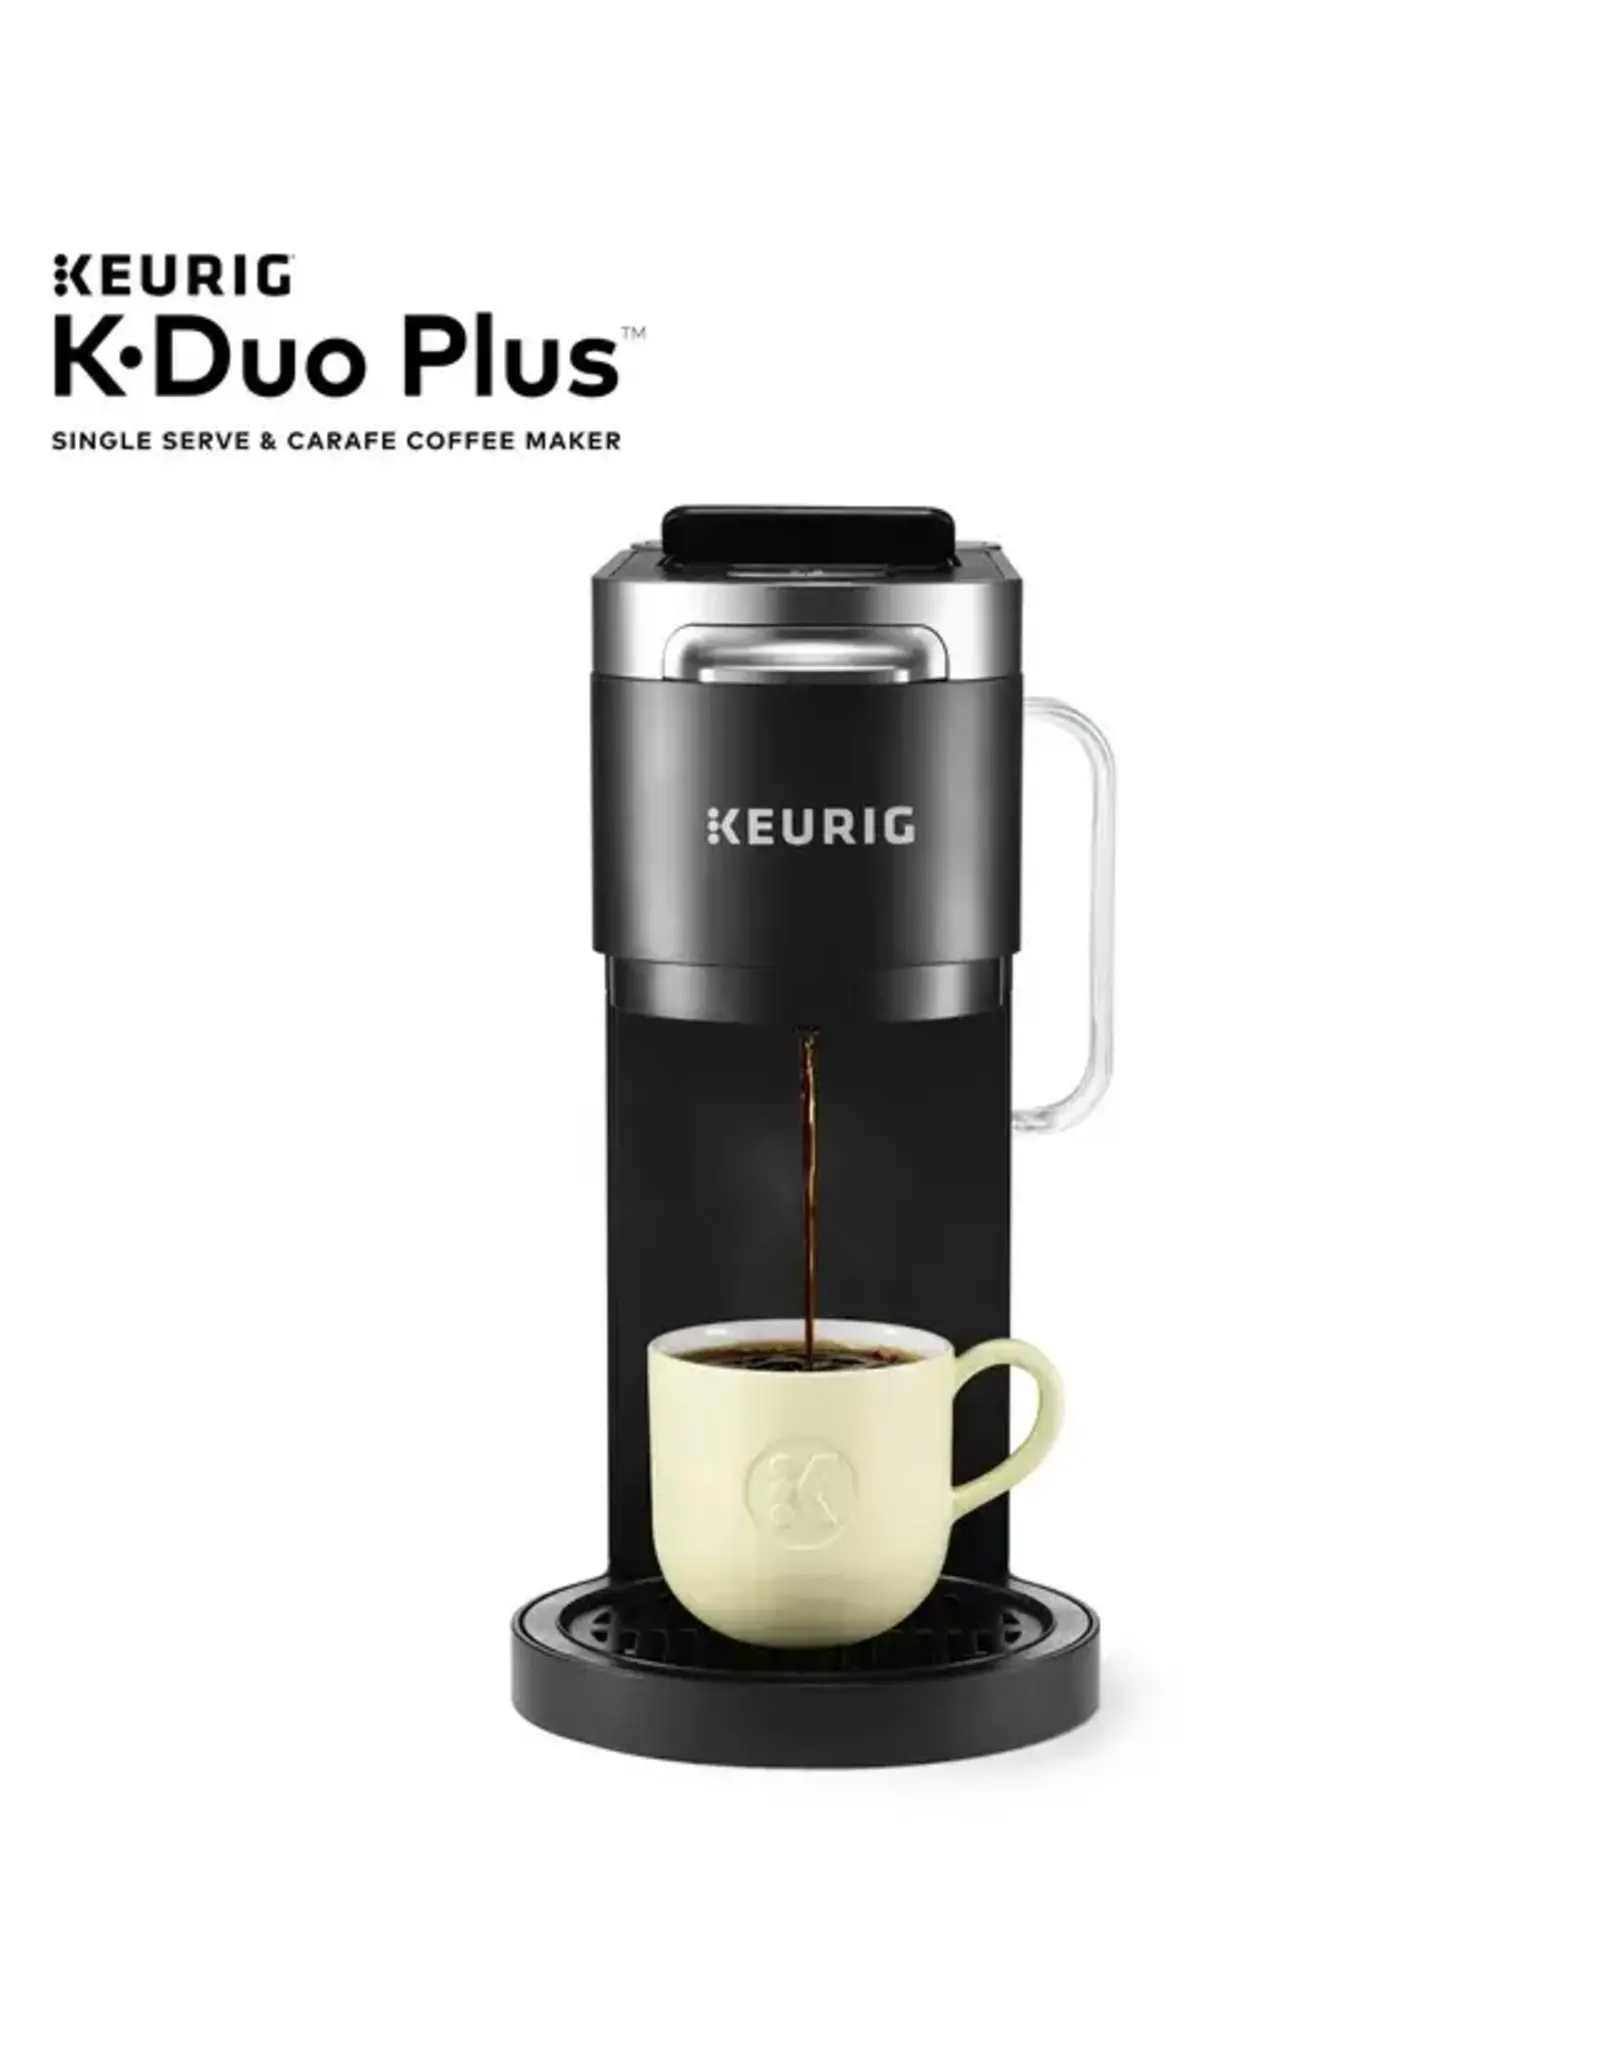 https://cdn.shoplightspeed.com/shops/634268/files/59183708/1600x2048x2/keurig-5000204978-keurig-k-duo-plus-12-cup-coffee.jpg